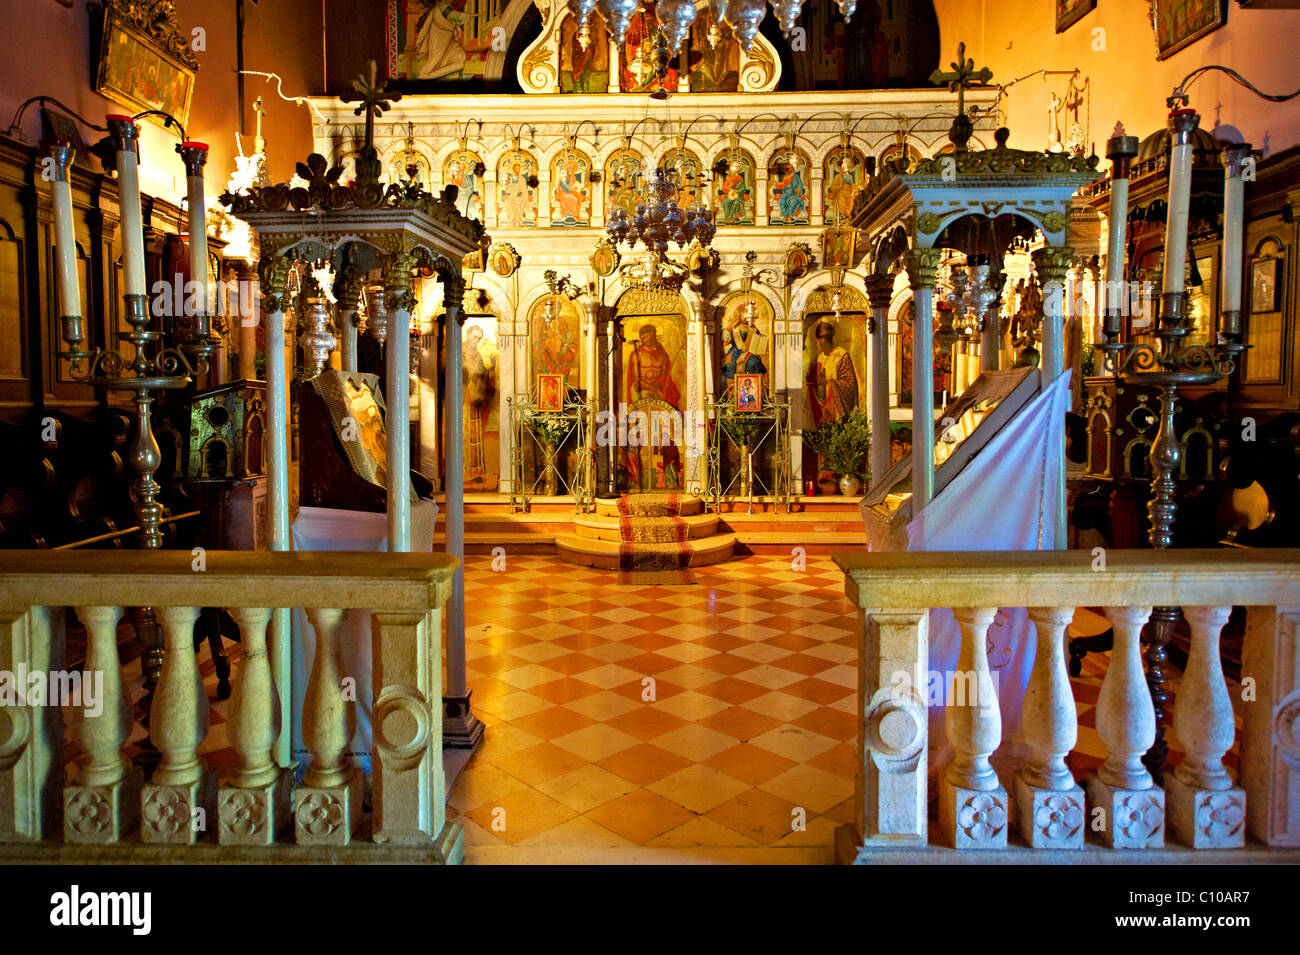 Intérieur de la Théotokos, Monastère, Paleokastitsa, 18e siècle grec orthodoxe. L'île Ionienne de Corfou, Grèce Banque D'Images